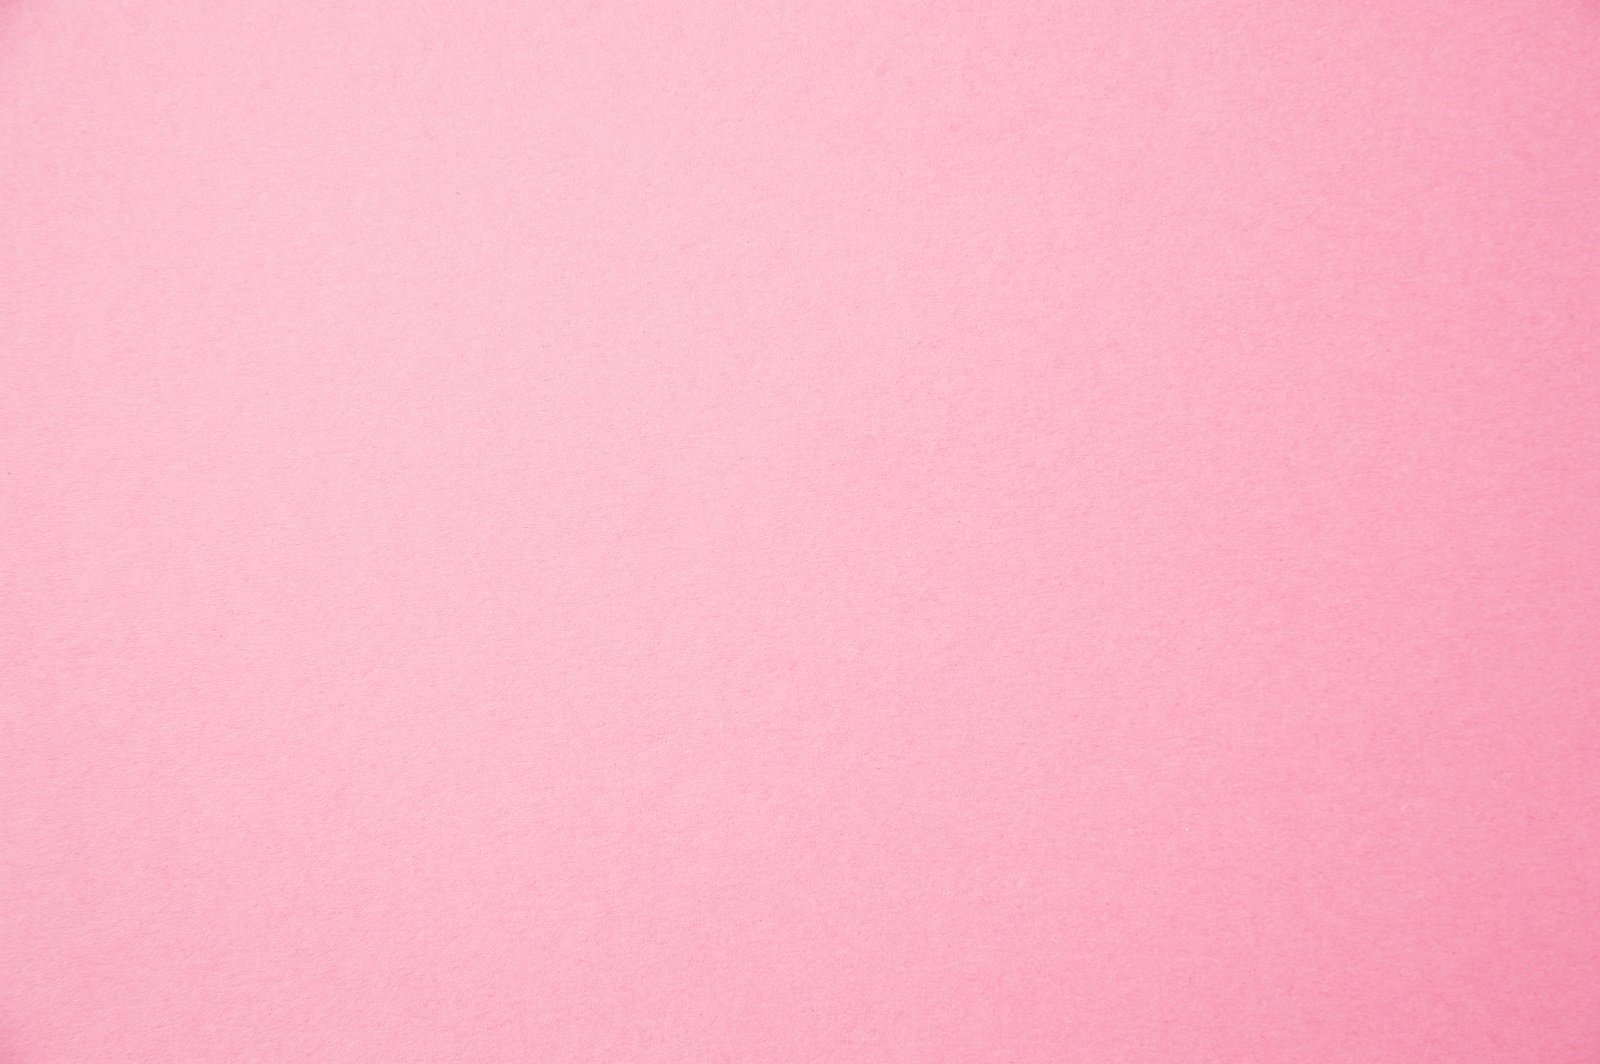 Как пишется бледно розовый. Светло розовая бумага. Бледно розовая бумага. Светло розовый фон. Нежно розовая бумага.